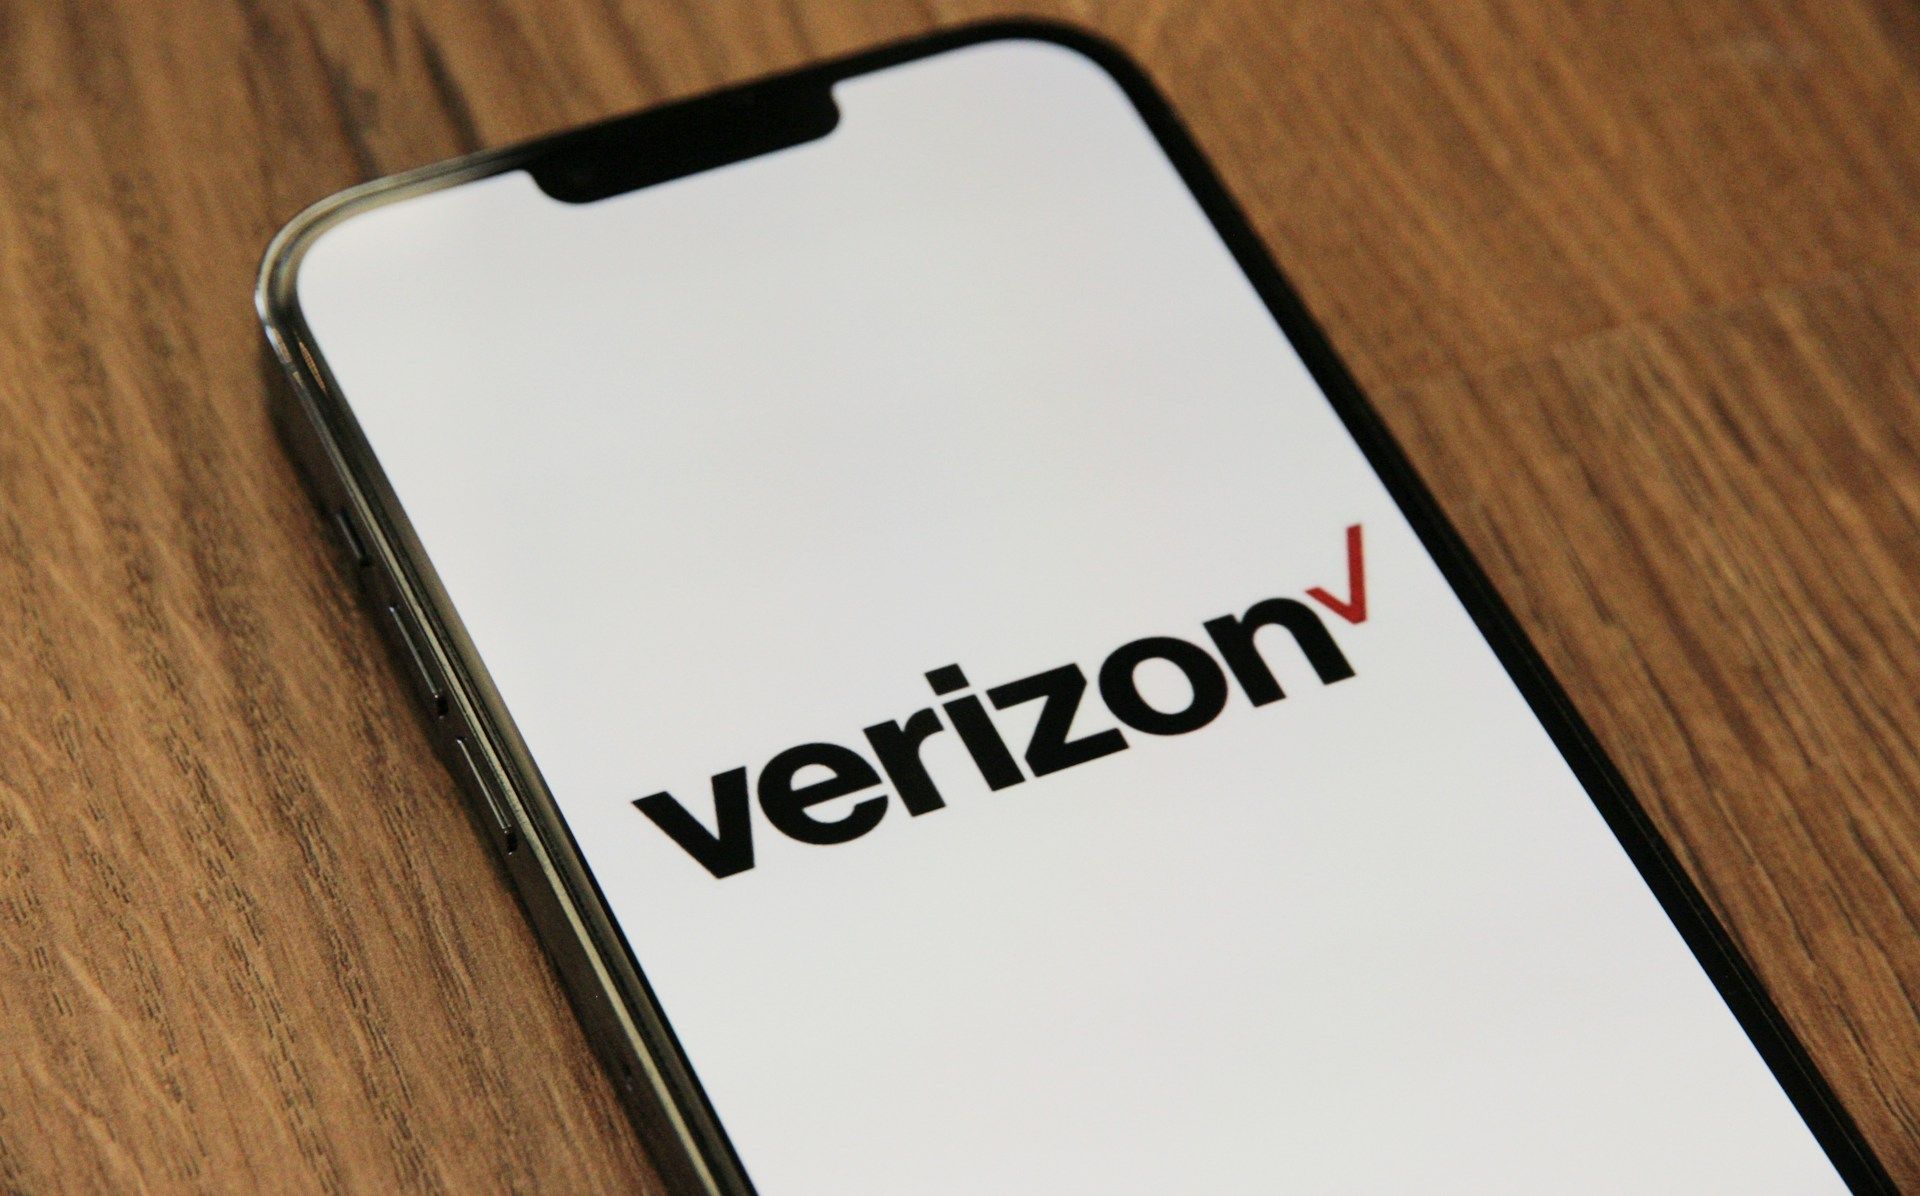 Imagem do logotipo da Verizon em um smartphone